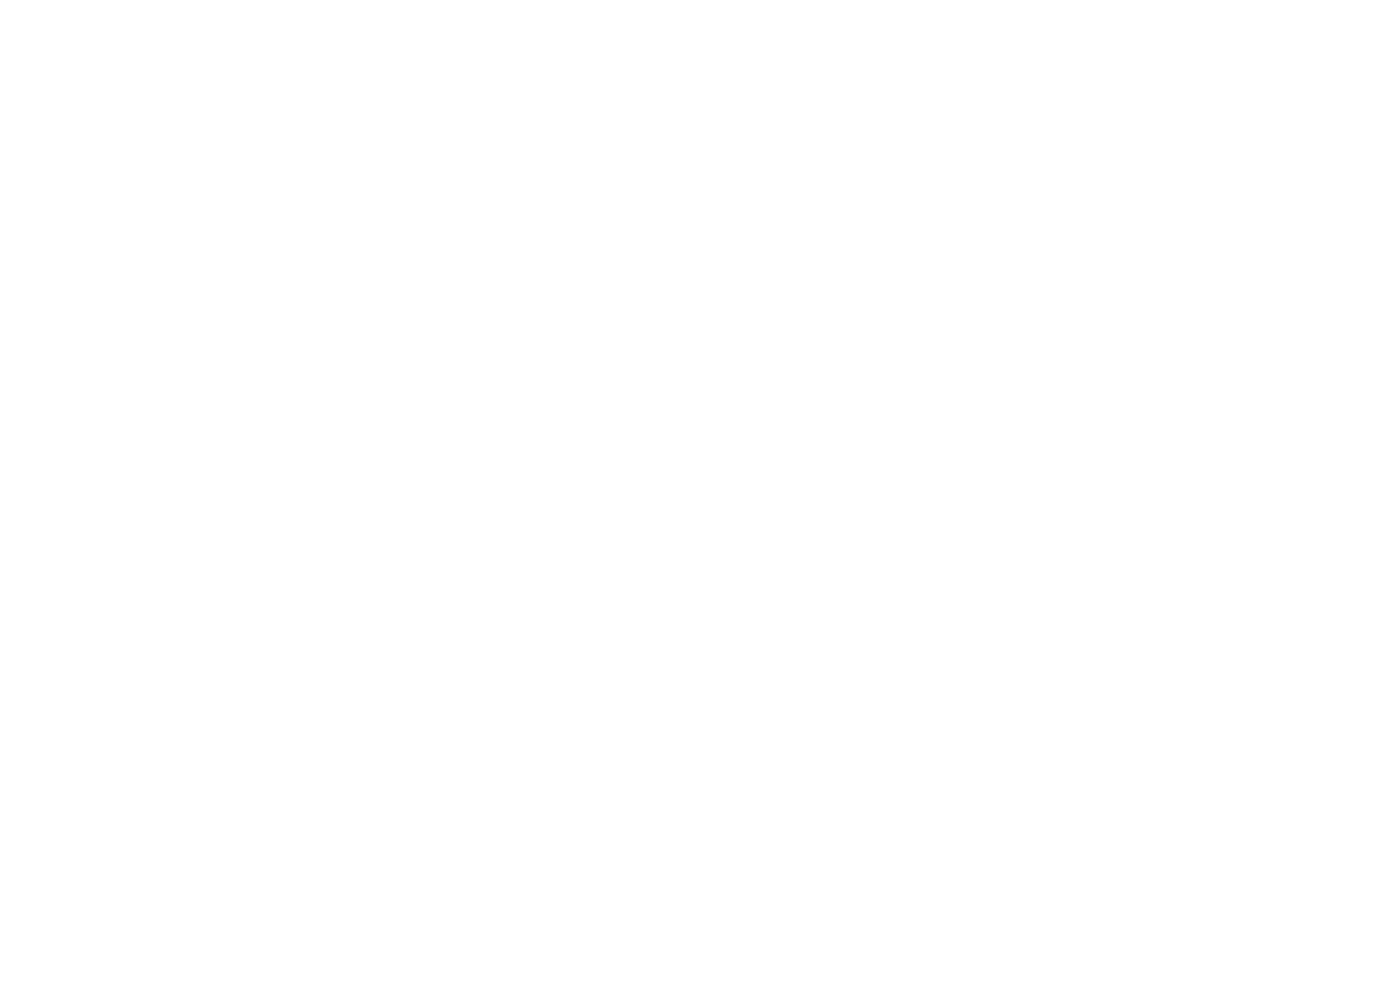 Zenith 